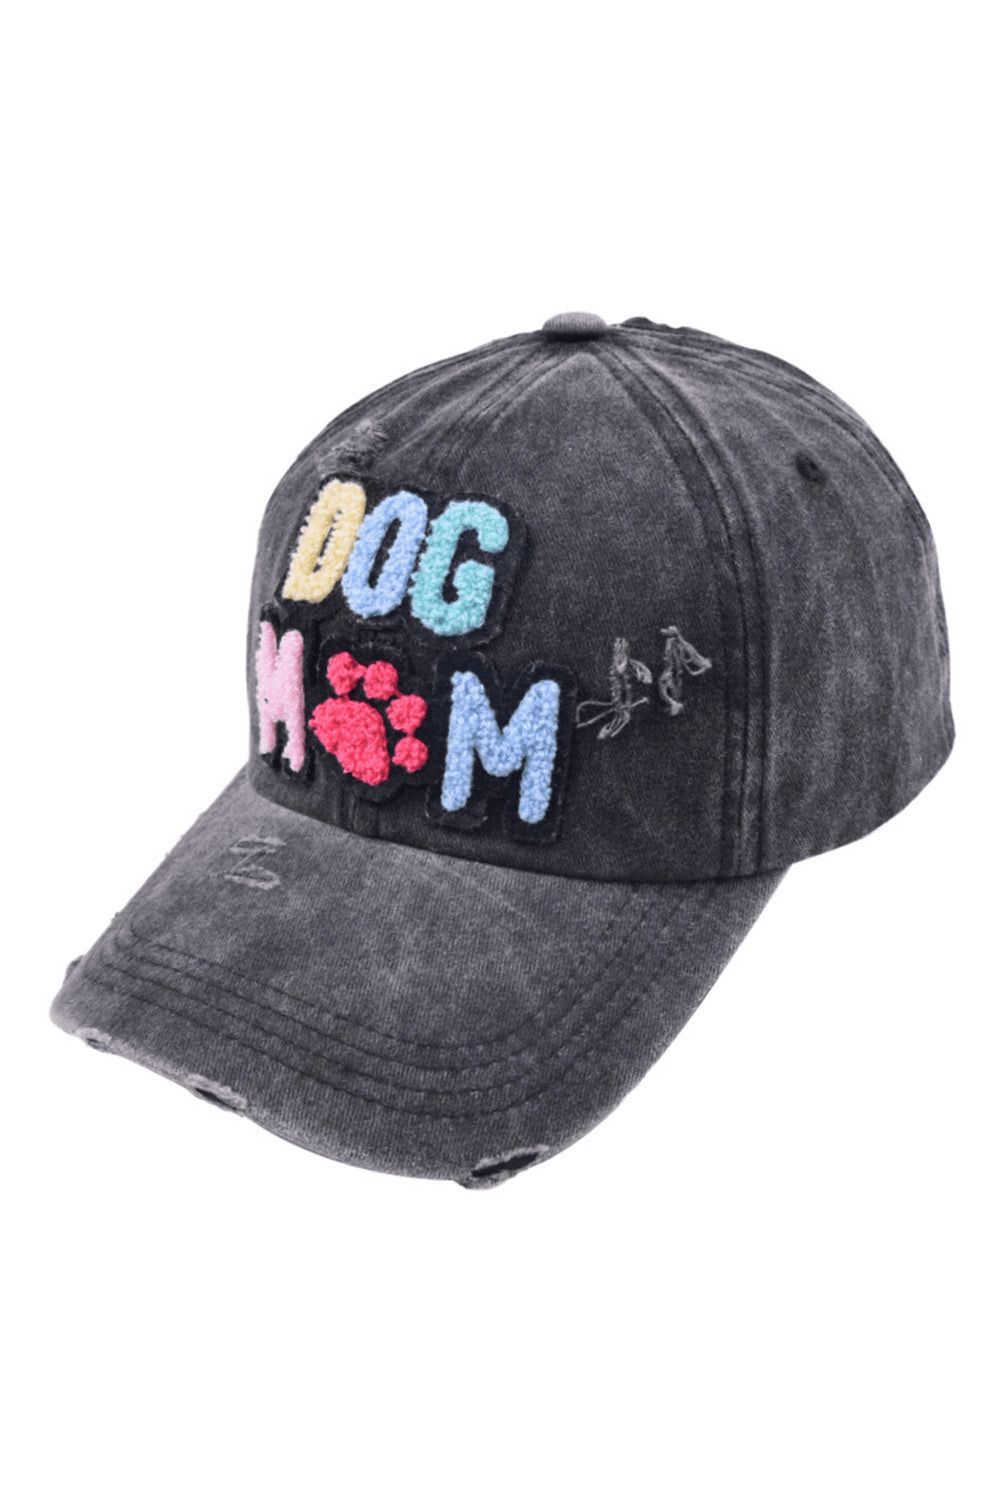 Dog and Pet Stuff Black / ONE SIZE / cotton DOG MAMA Baseball Cap